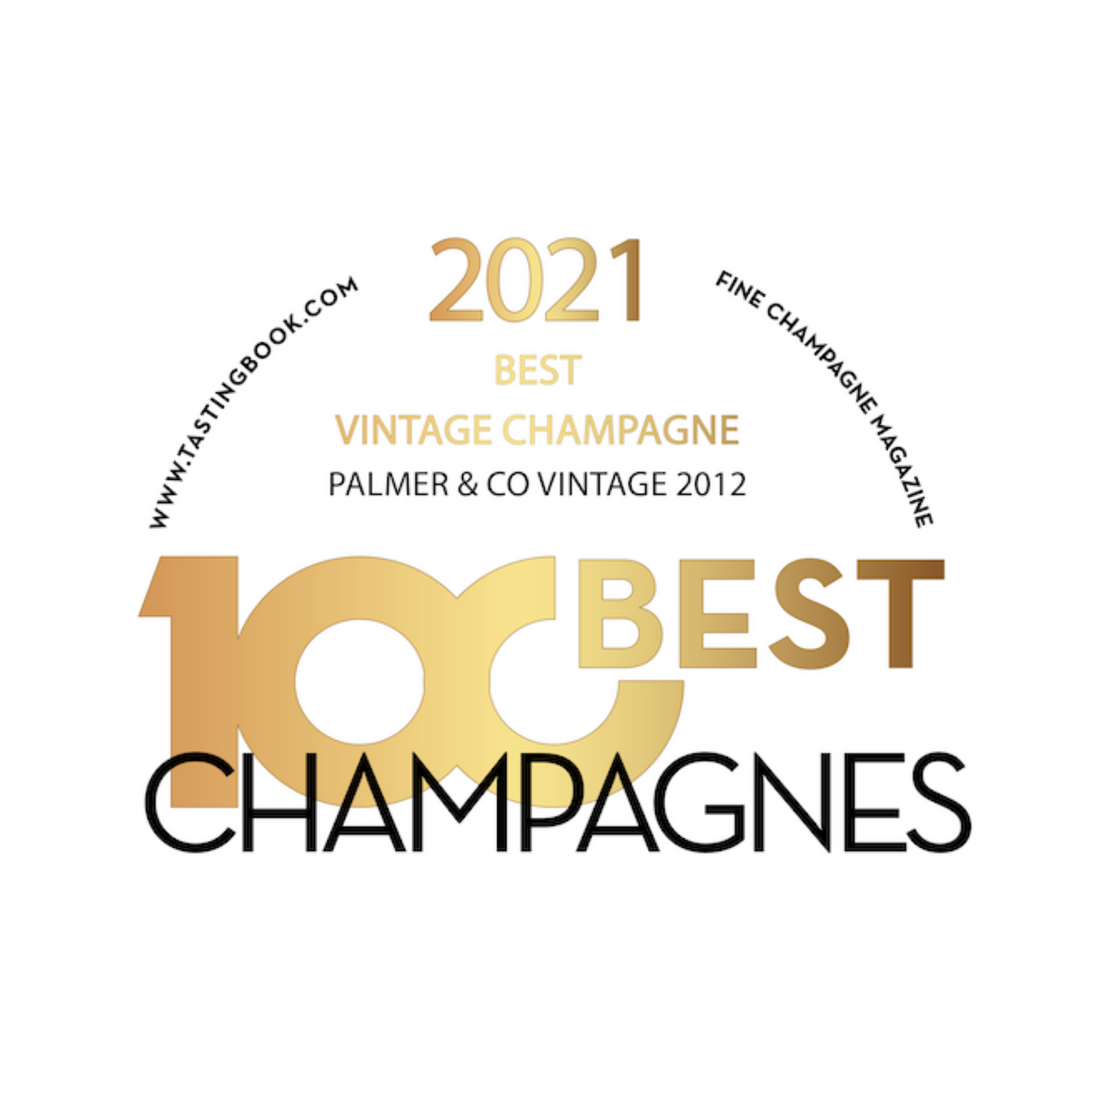 A világ legjobb évjáratos champagne-a 2021-ben